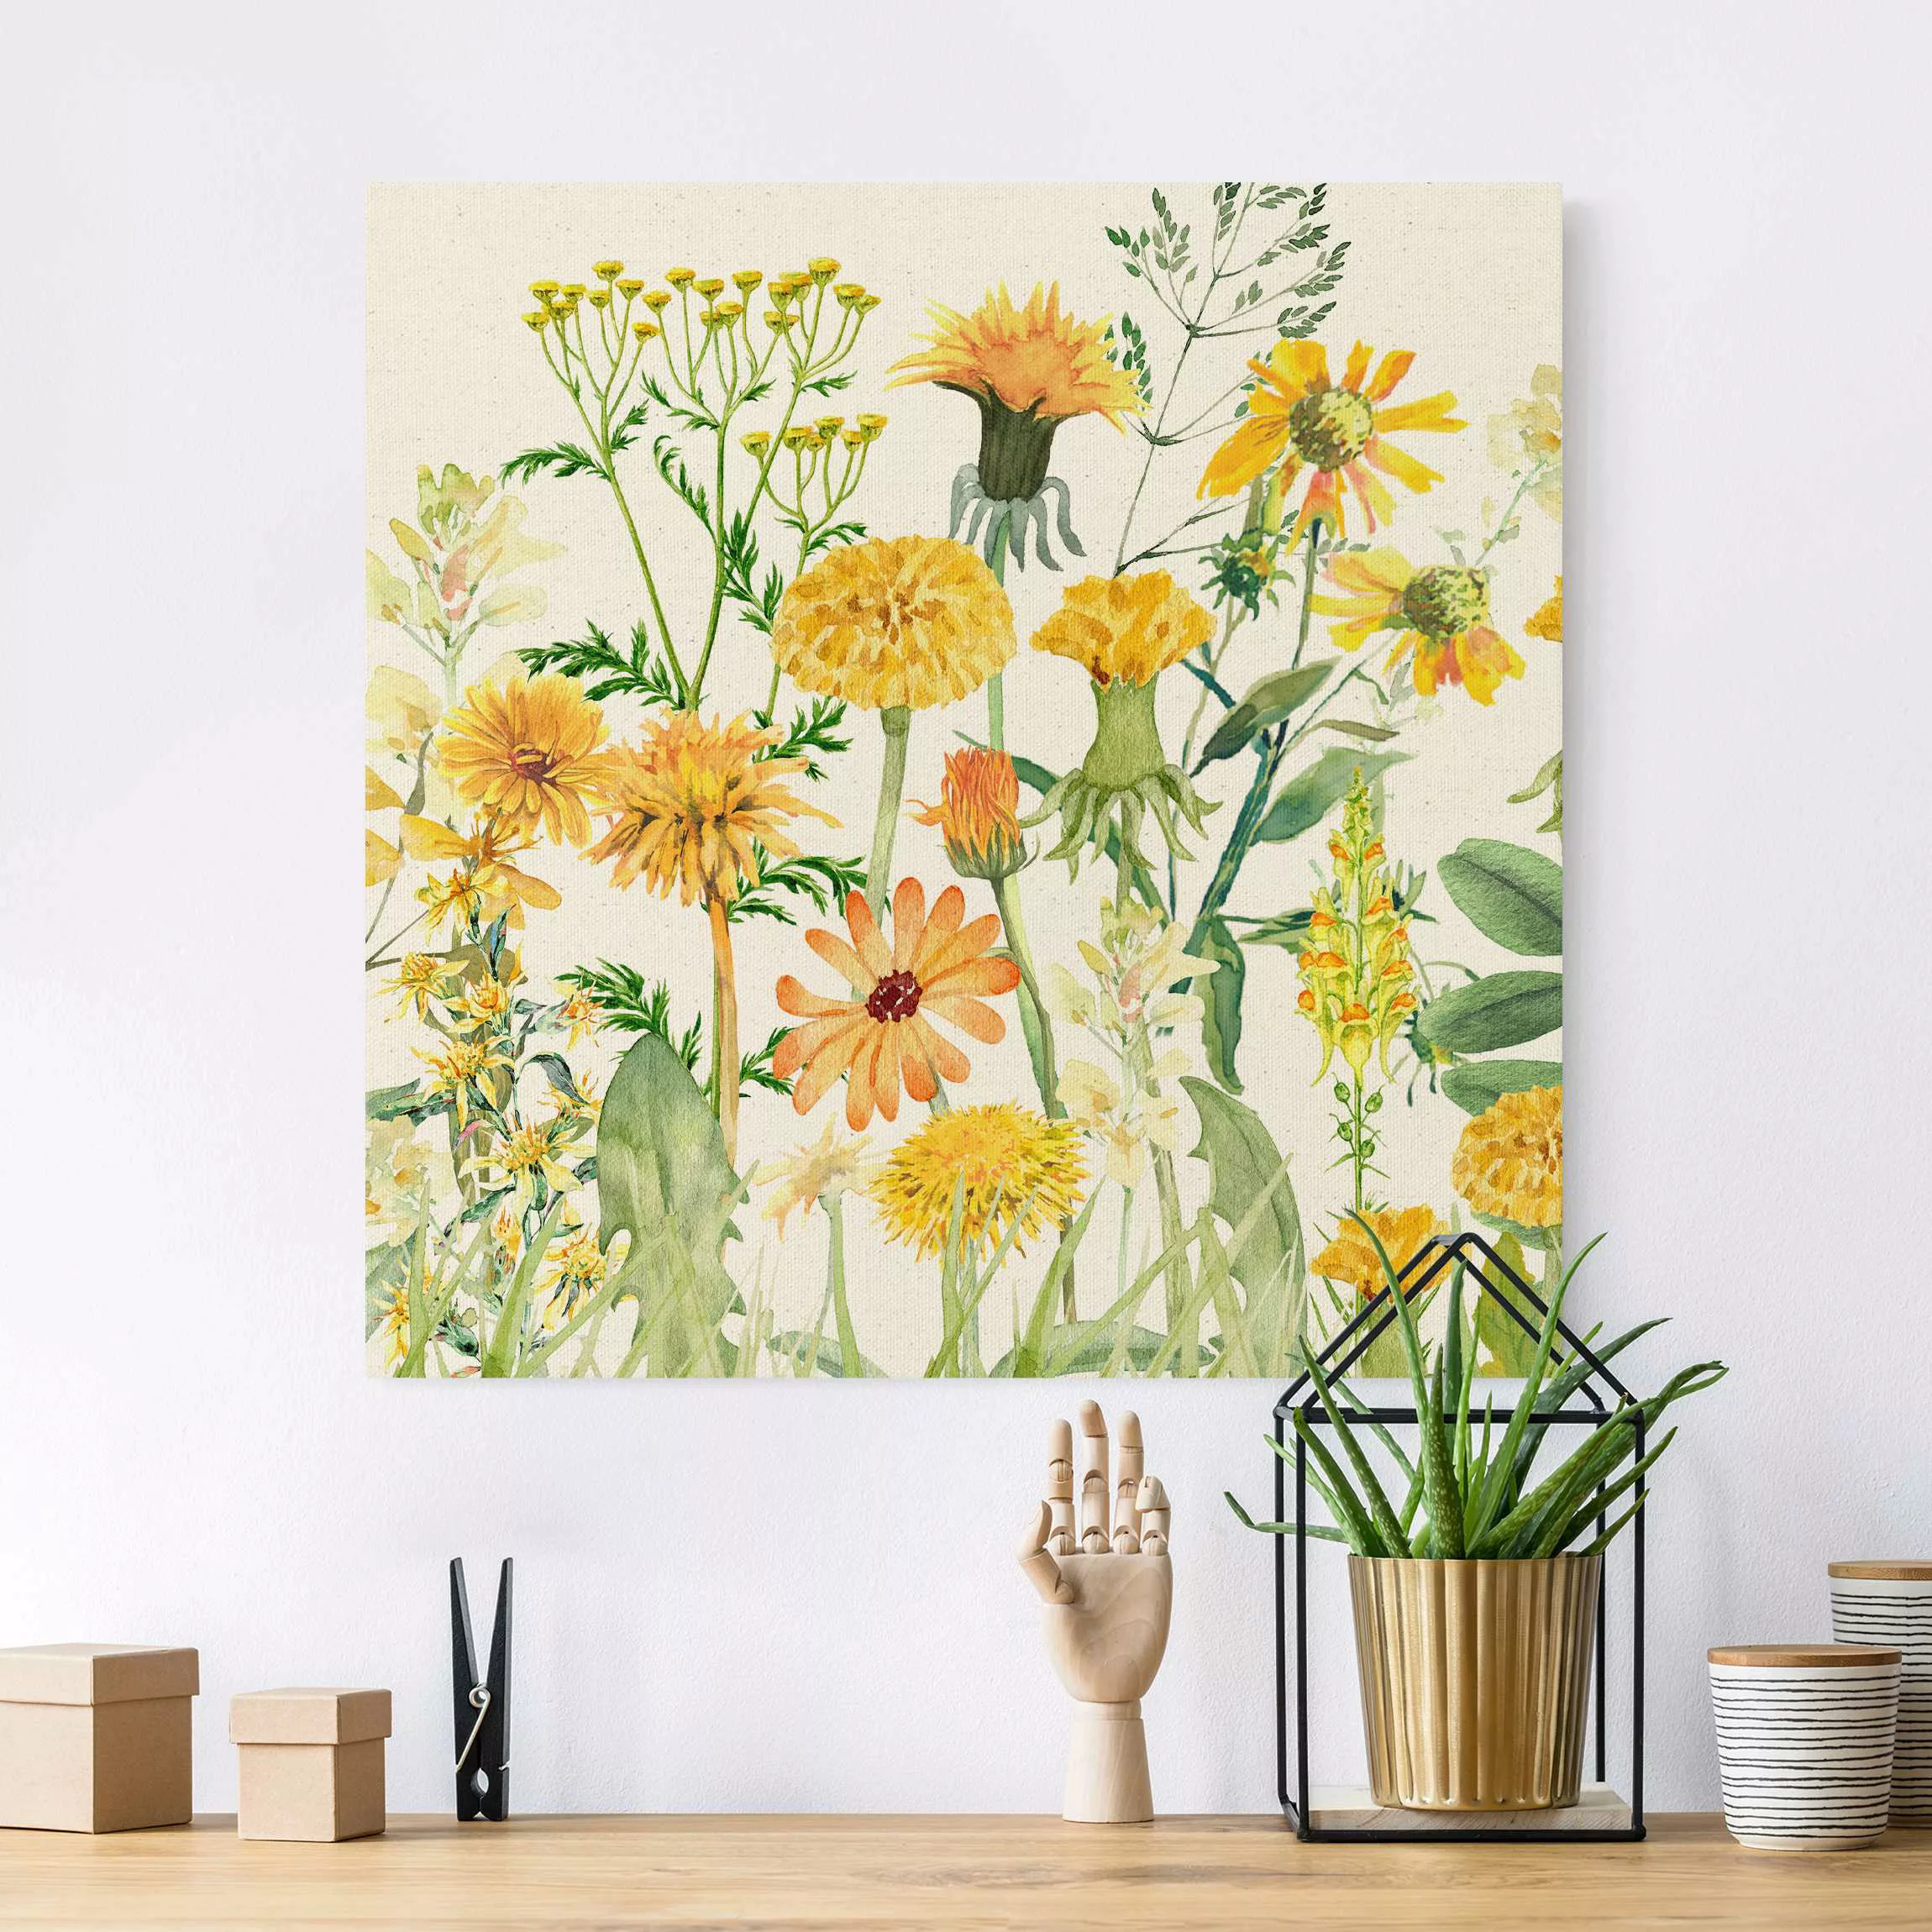 Leinwandbild auf Naturcanvas Aquarellierte Blumenwiese in Gelb günstig online kaufen